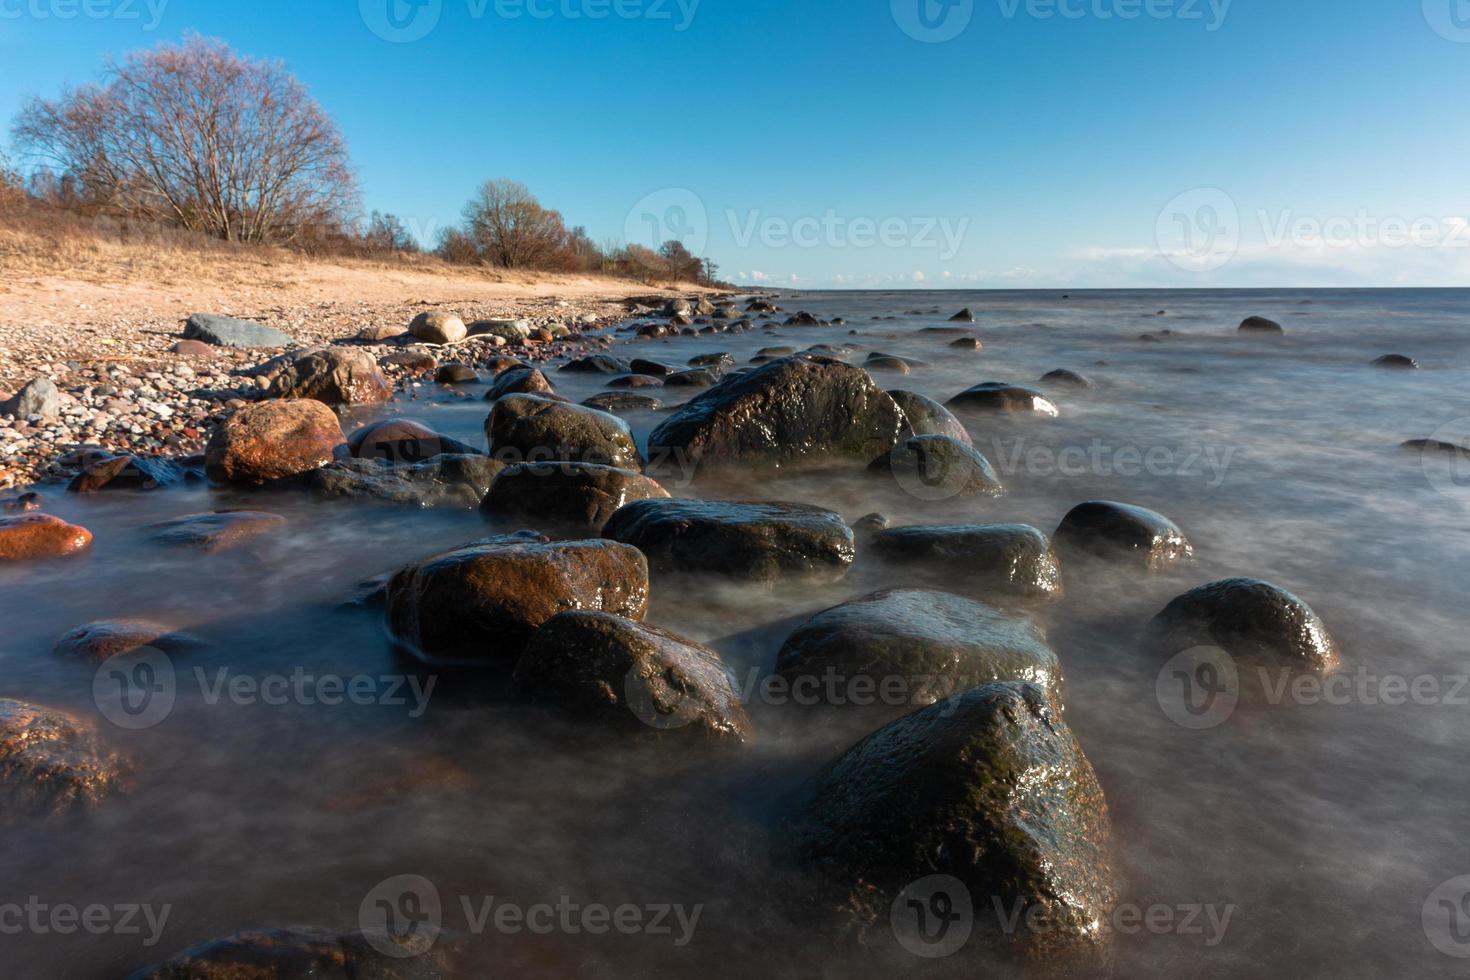 pietre su il costa di il baltico mare a tramonto foto